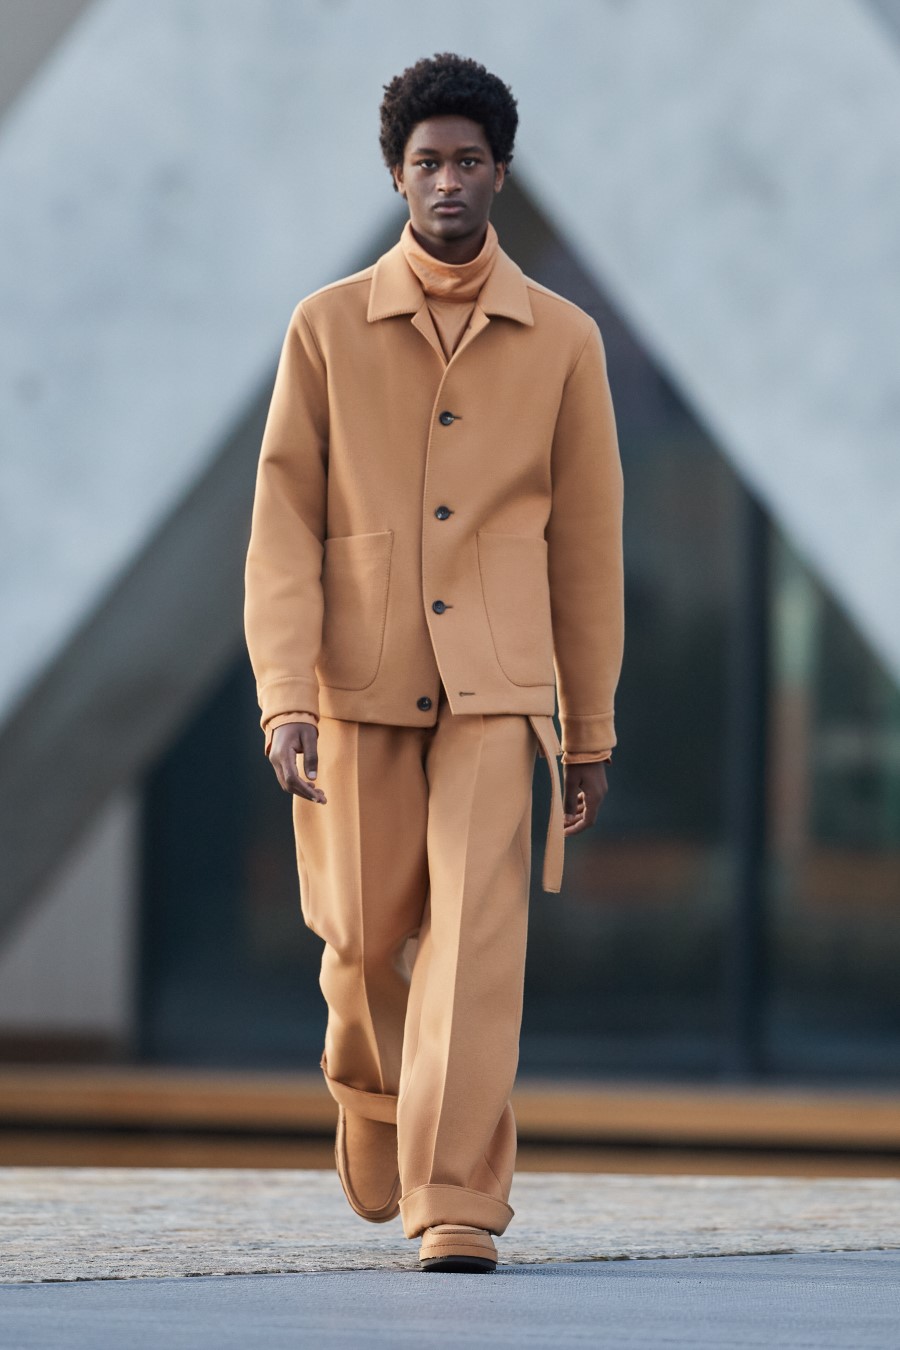 Ermenegildo Zegna Fall Winter 2021 - Milan Fashion Week Men’s